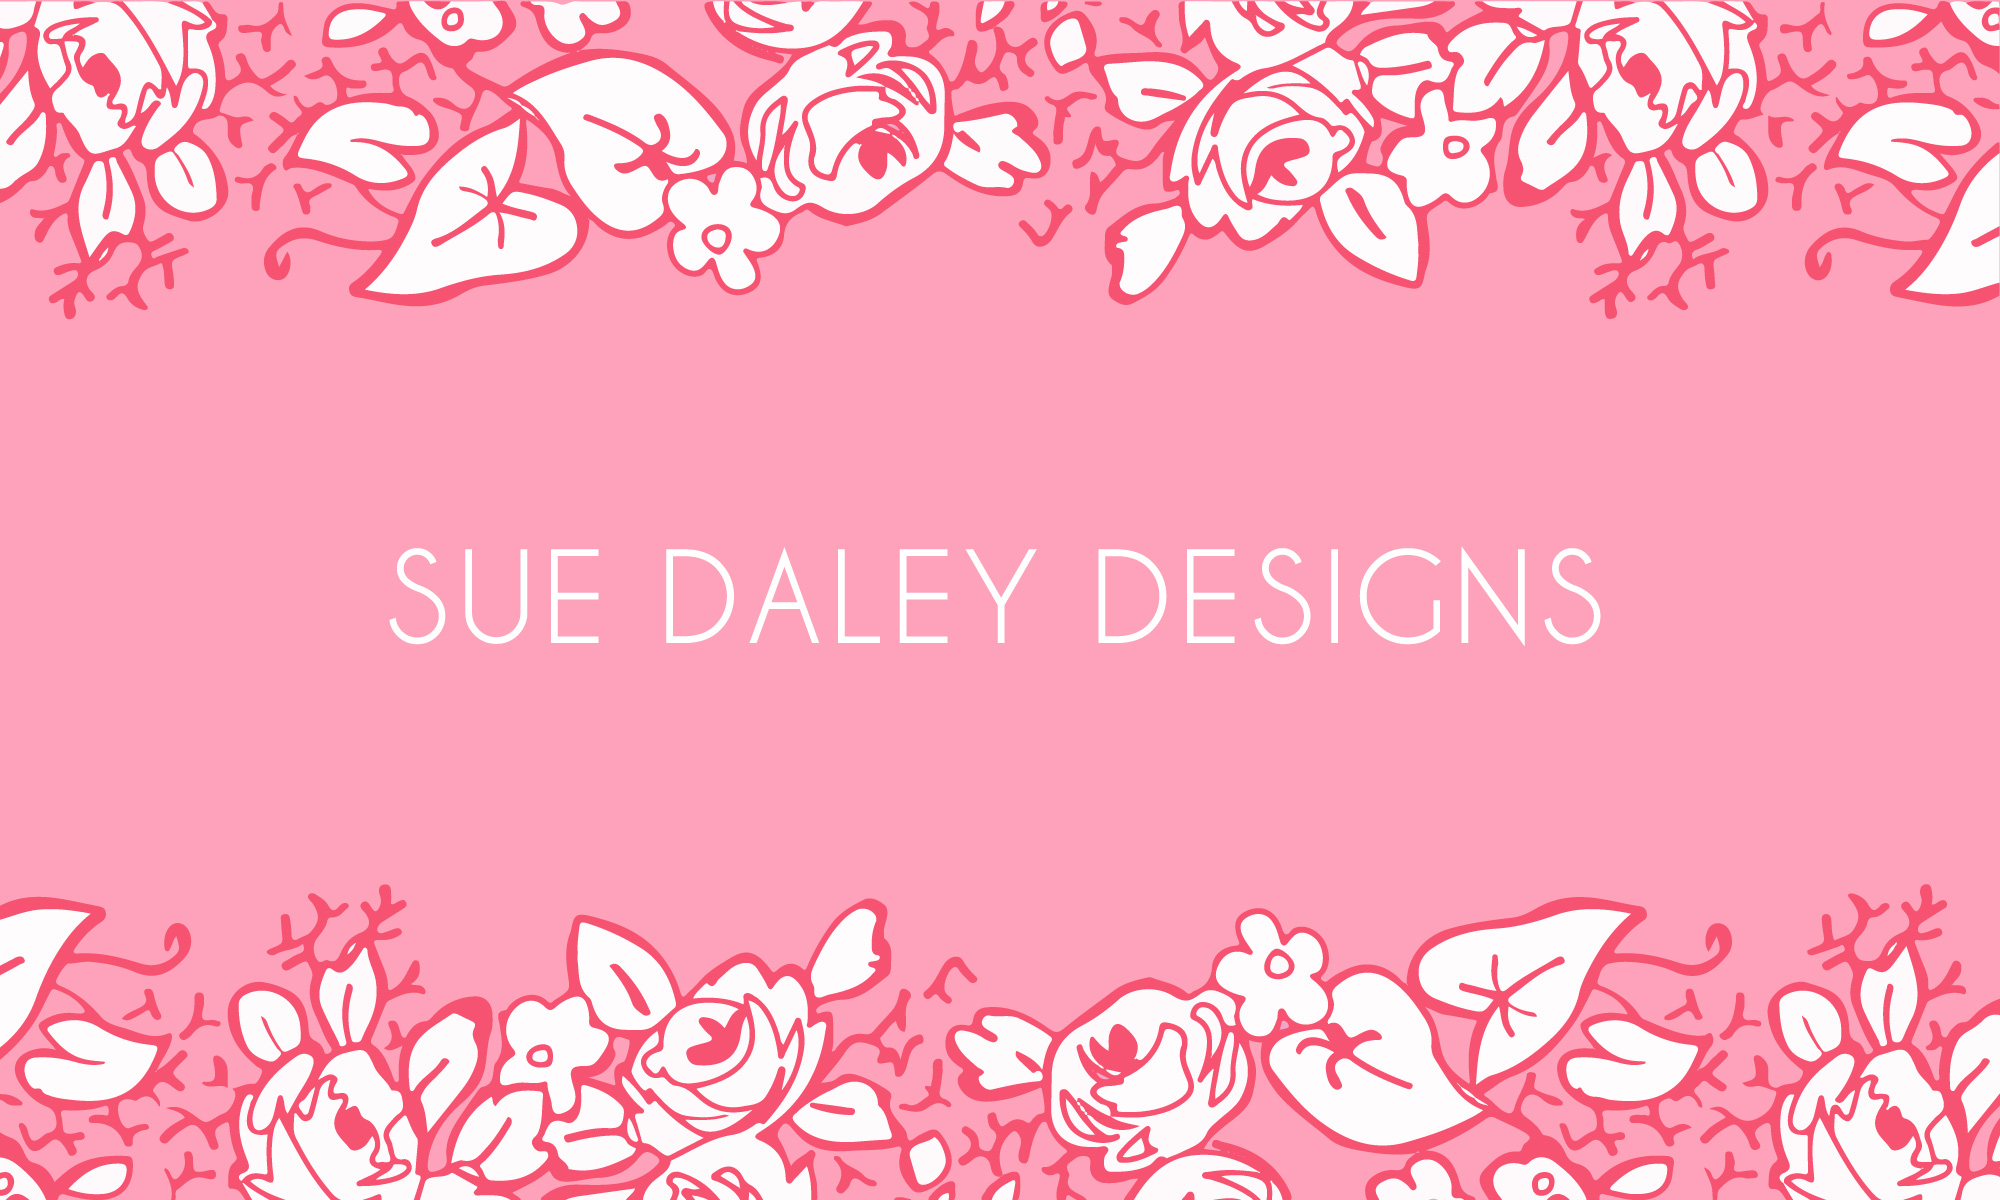 Sue Daley Designs